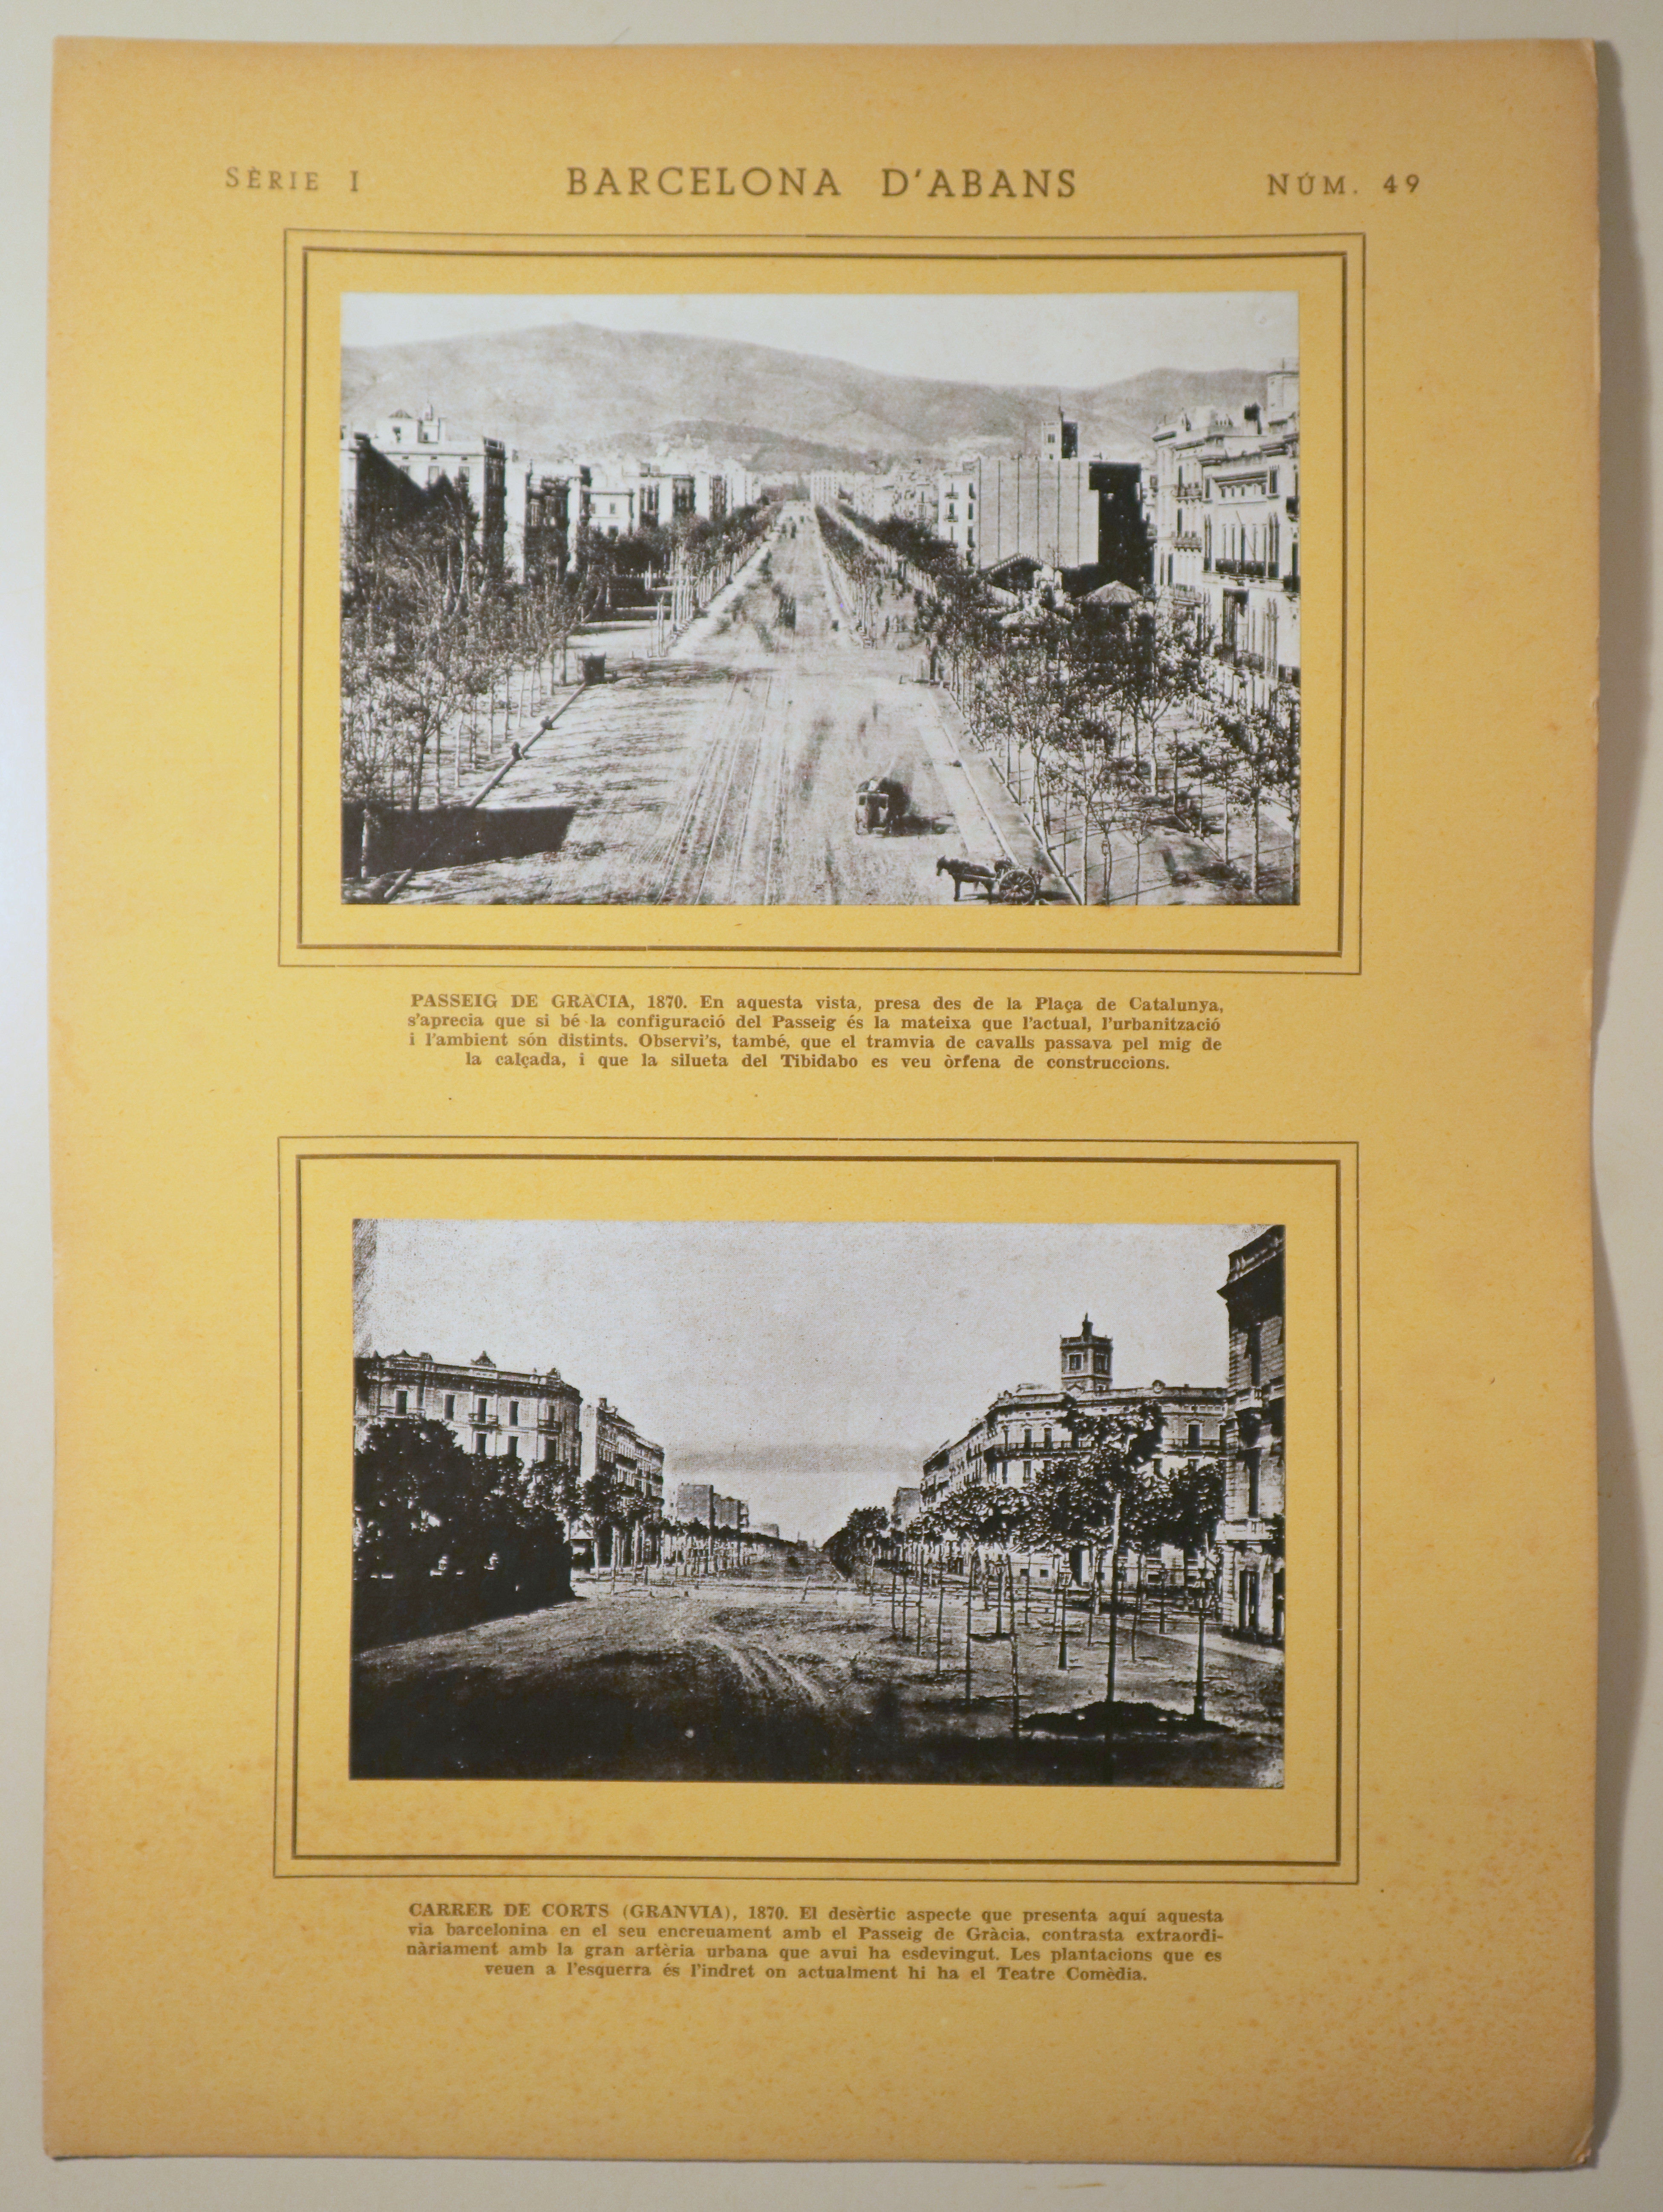 BARCELONA D'ABANS. Sèrie I. Núm. IL. Passeig de Gràcia, 1870 i Carrer de Corts (Granvia), 1870 - Barcelona 1964 - Diorama